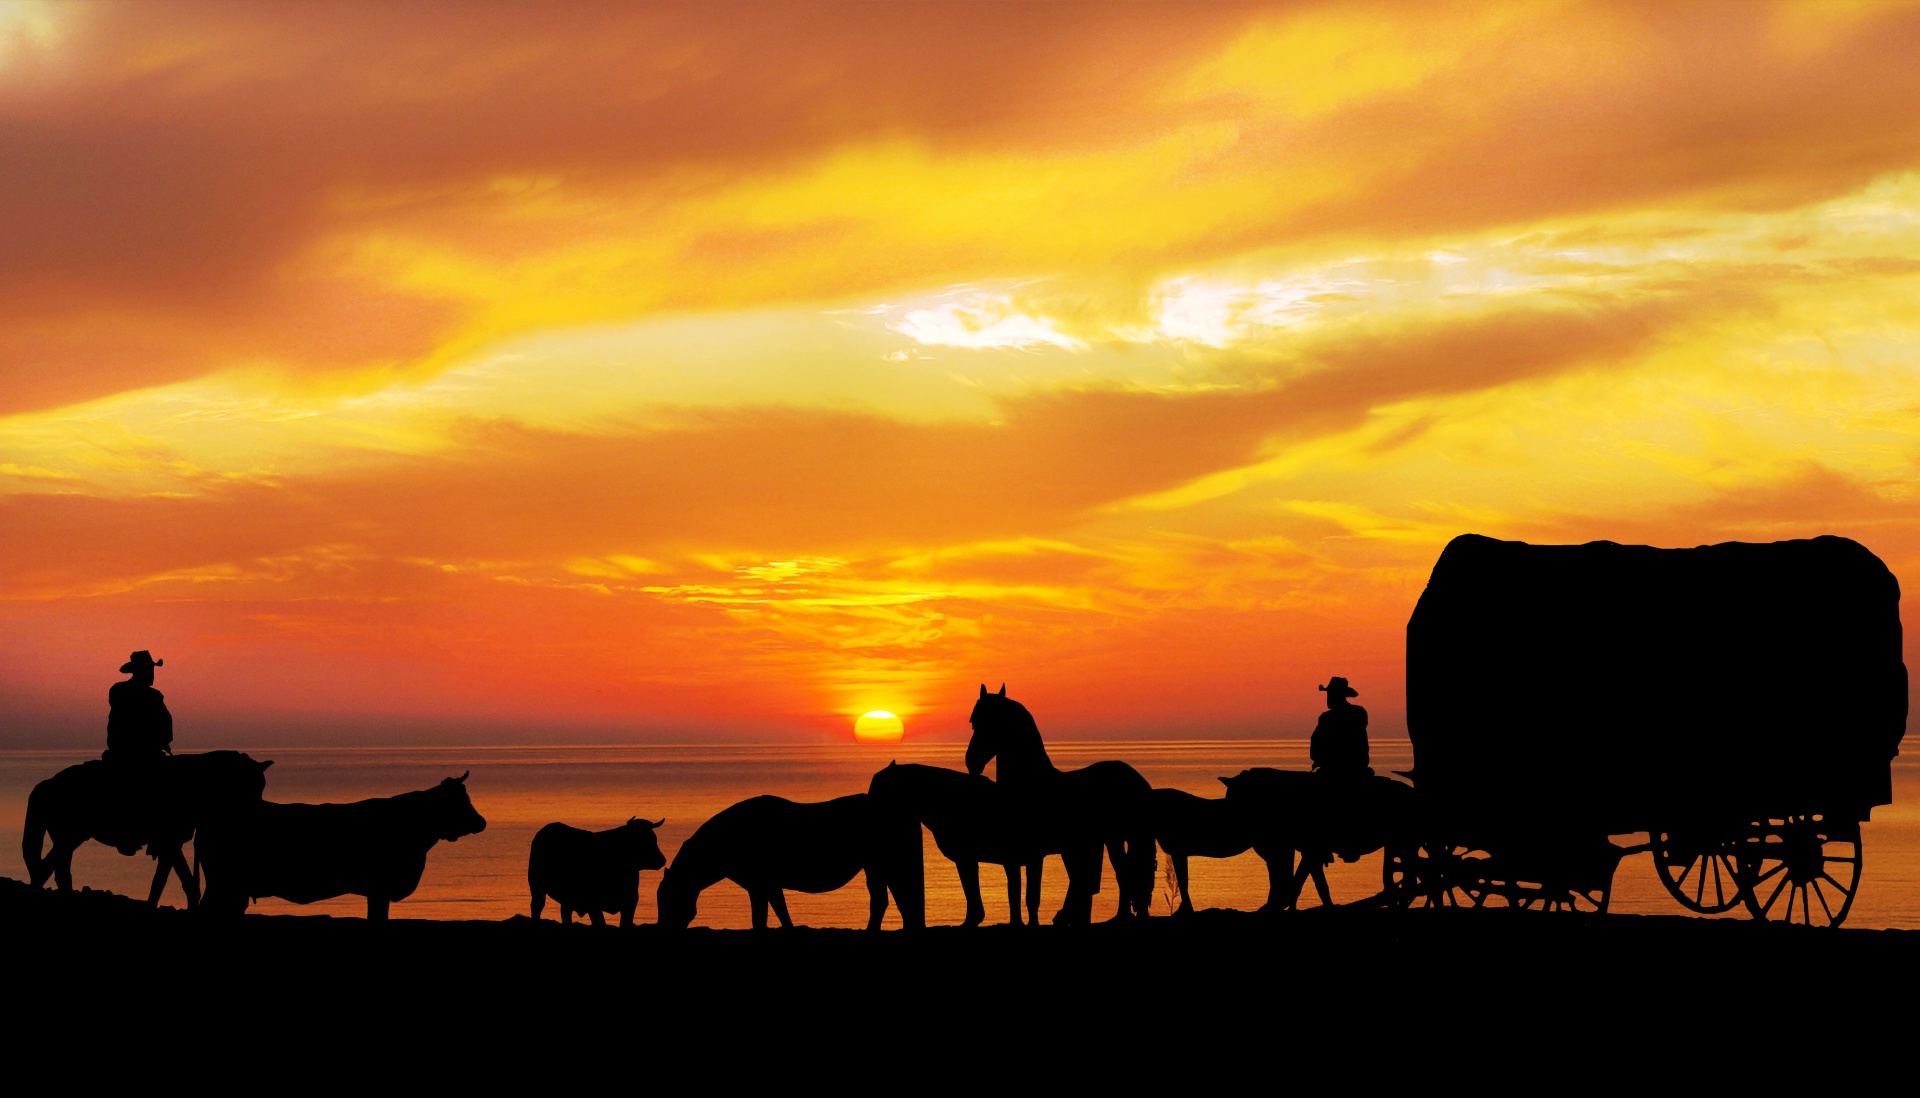 Horses, Cattle Sunset Silhouette